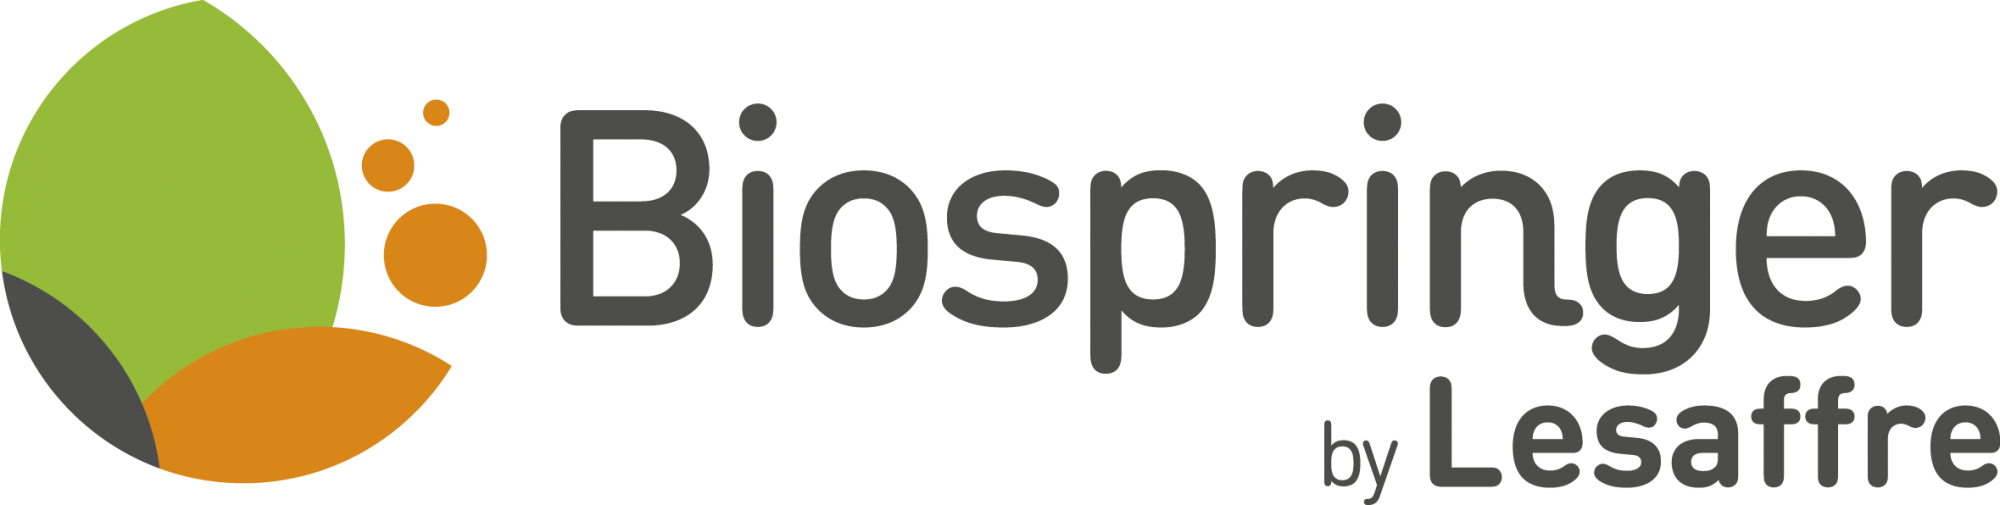 logo-Biospringer